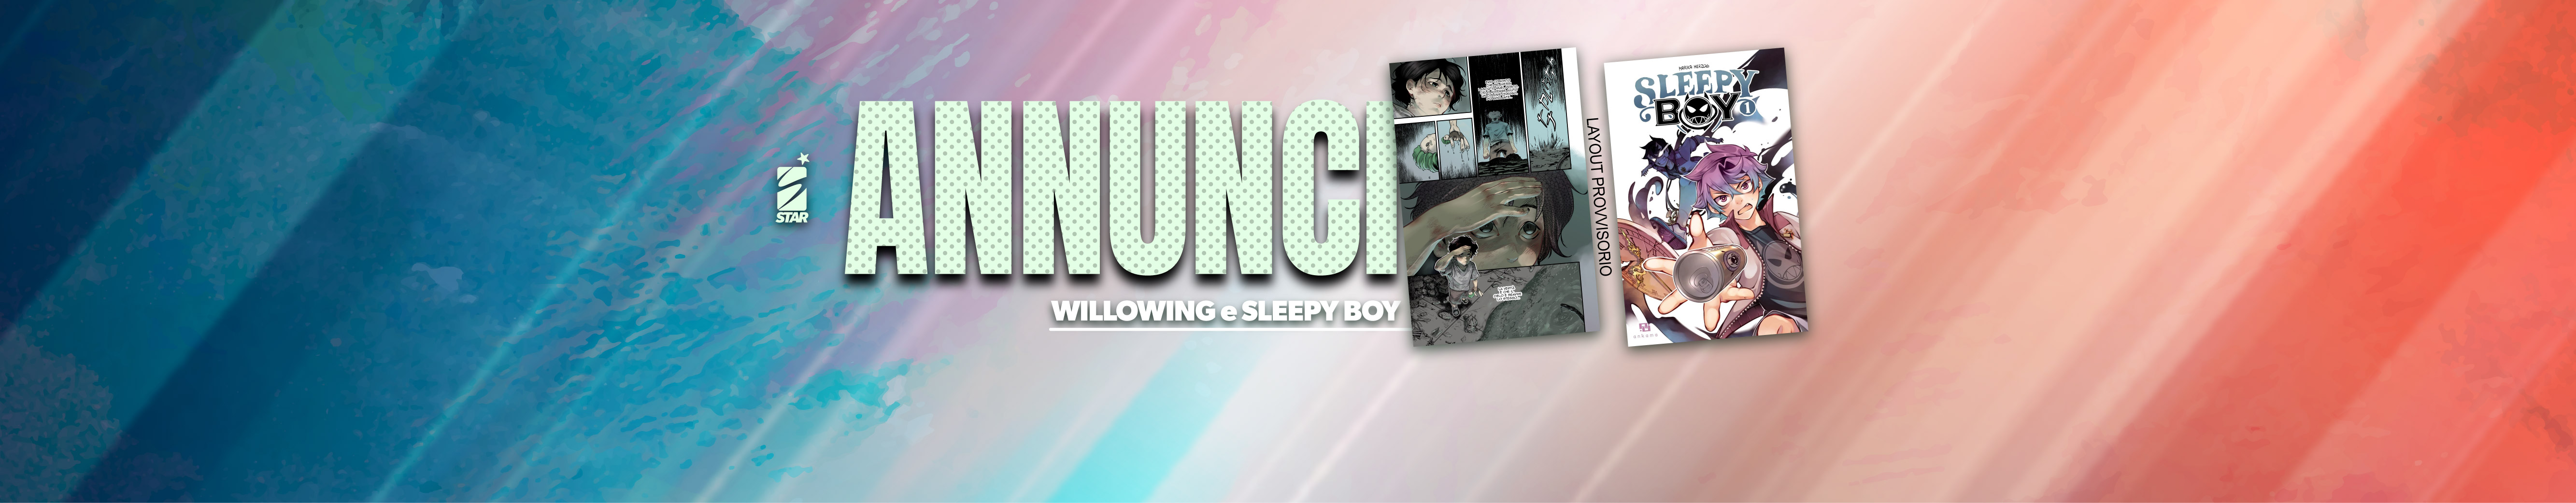 Annuncio - Willowing, Sleepy-04.jpg